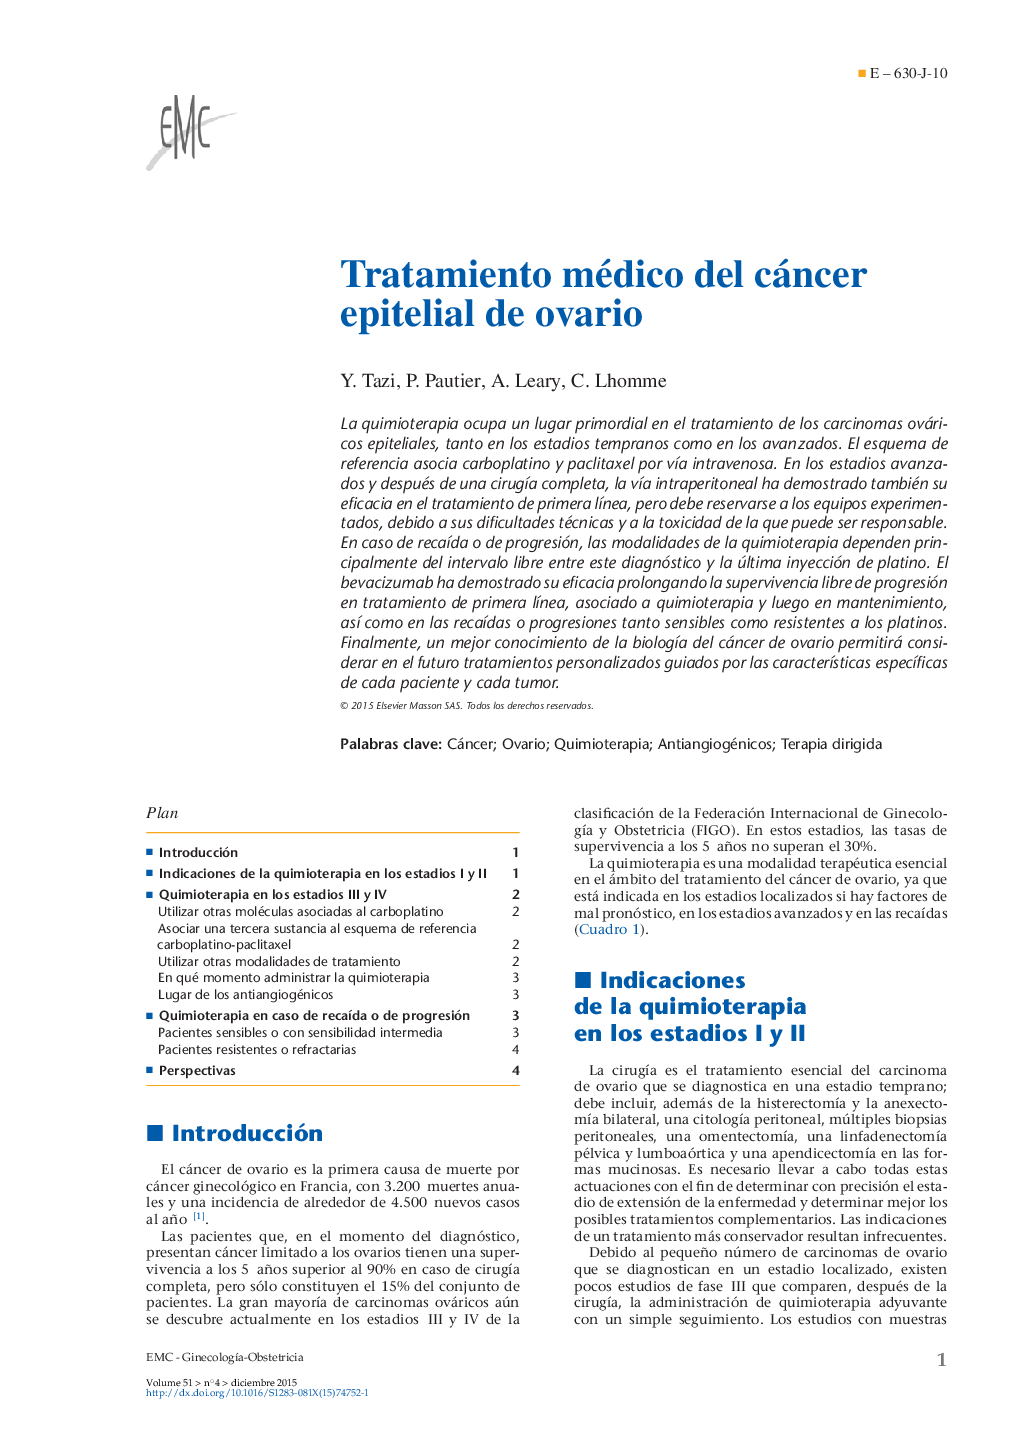 Tratamiento médico del cáncer epitelial de ovario